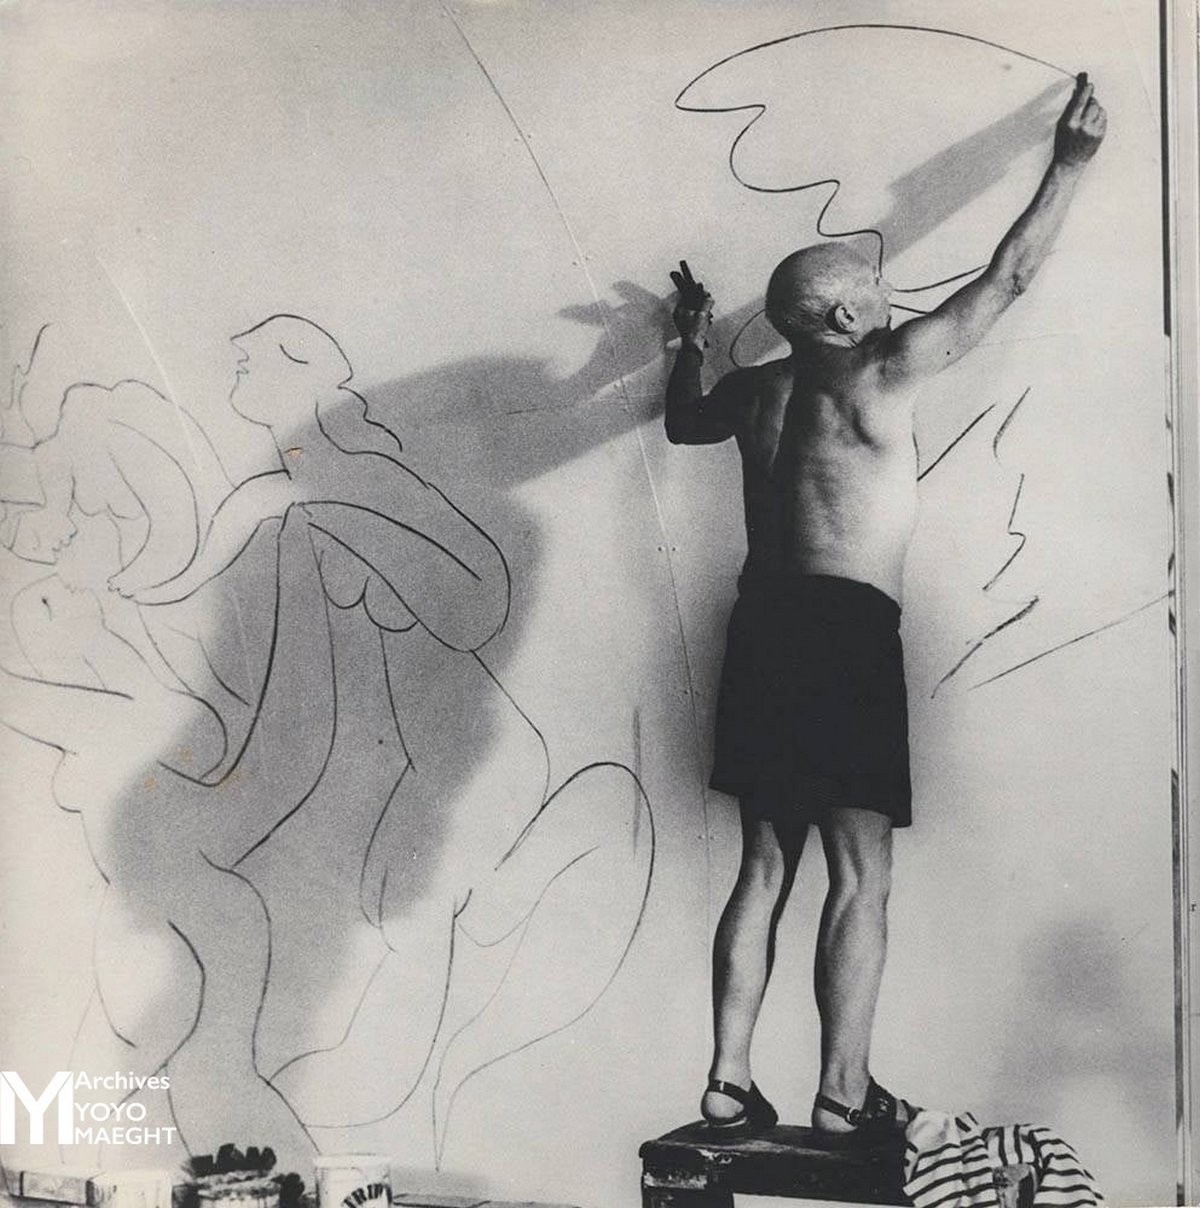 Pablo Picasso par Brassaï, vers 1960, archives Yoyo Maeght